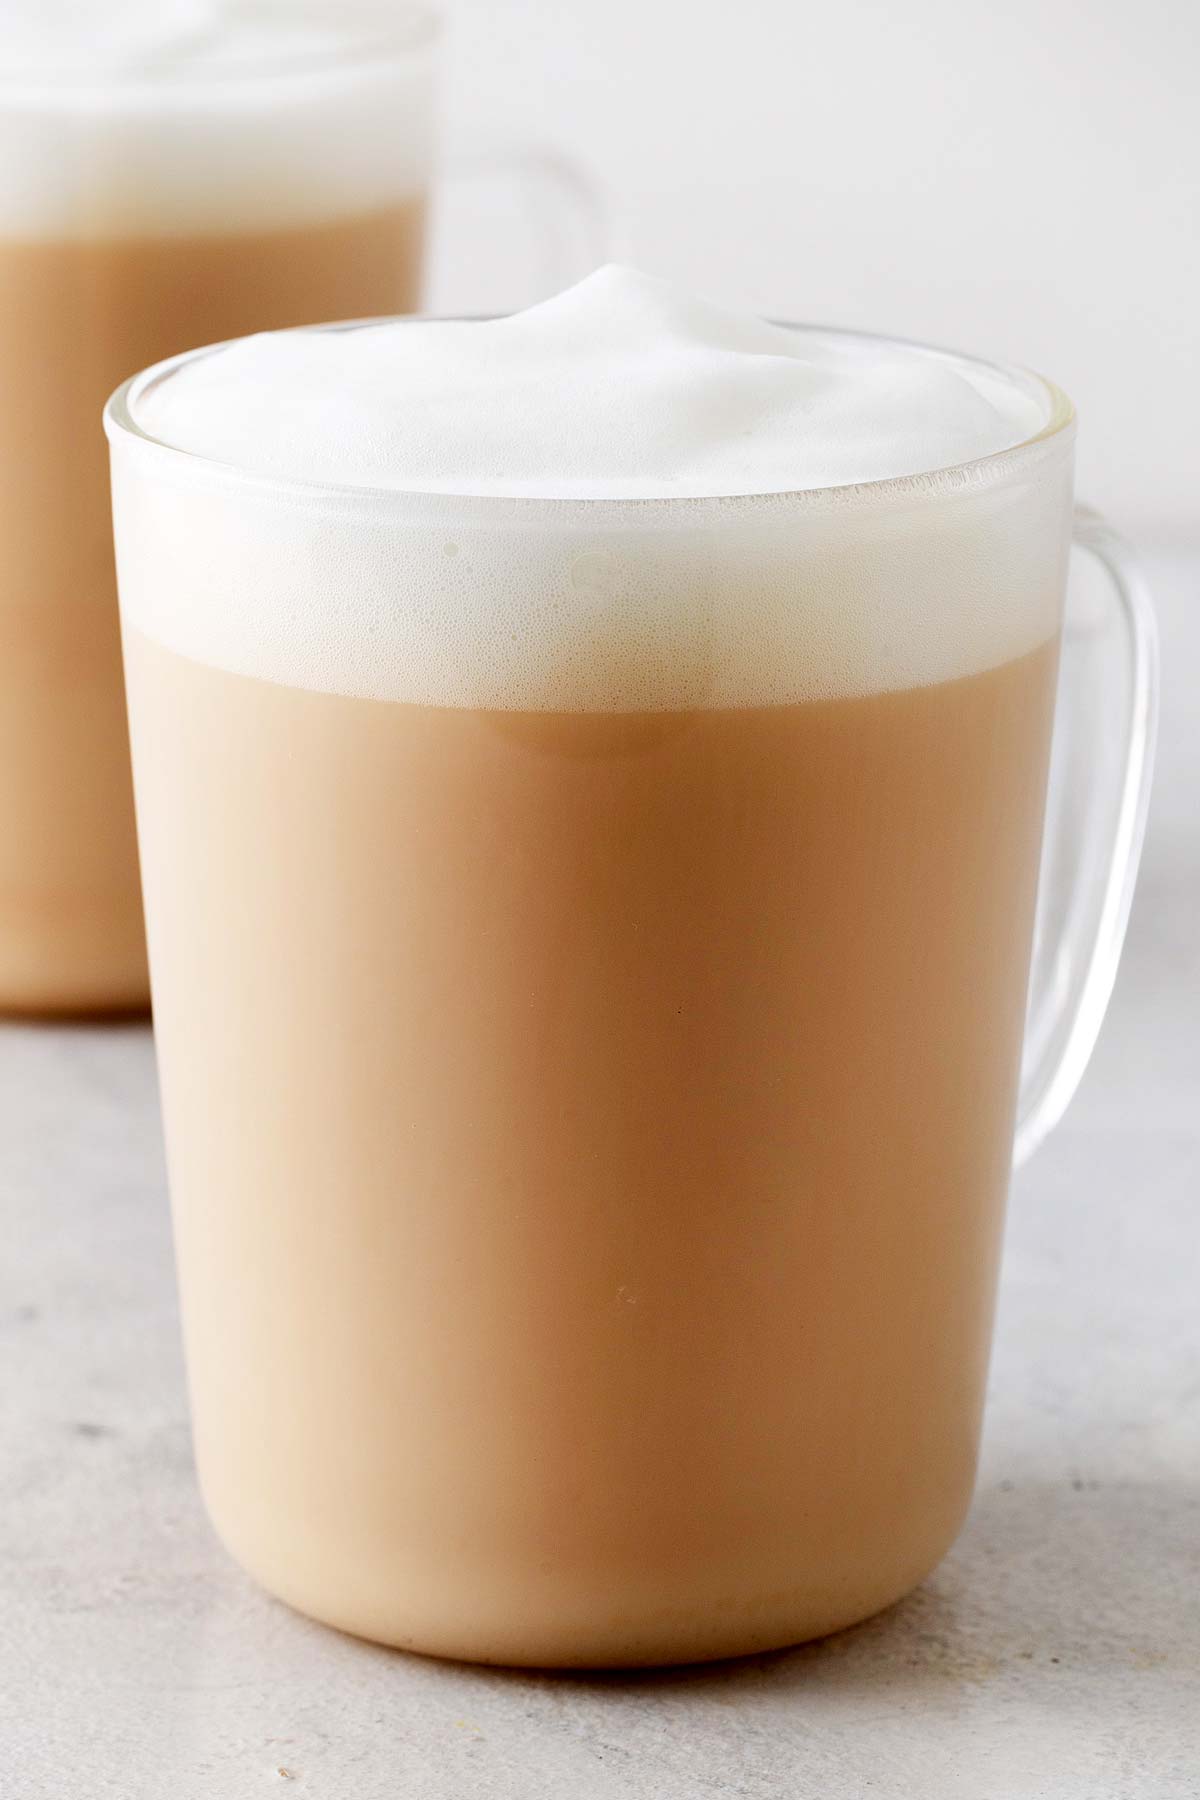 Starbucks London Fog Tea Latte Copycat with foam on top in a clear glass mug.